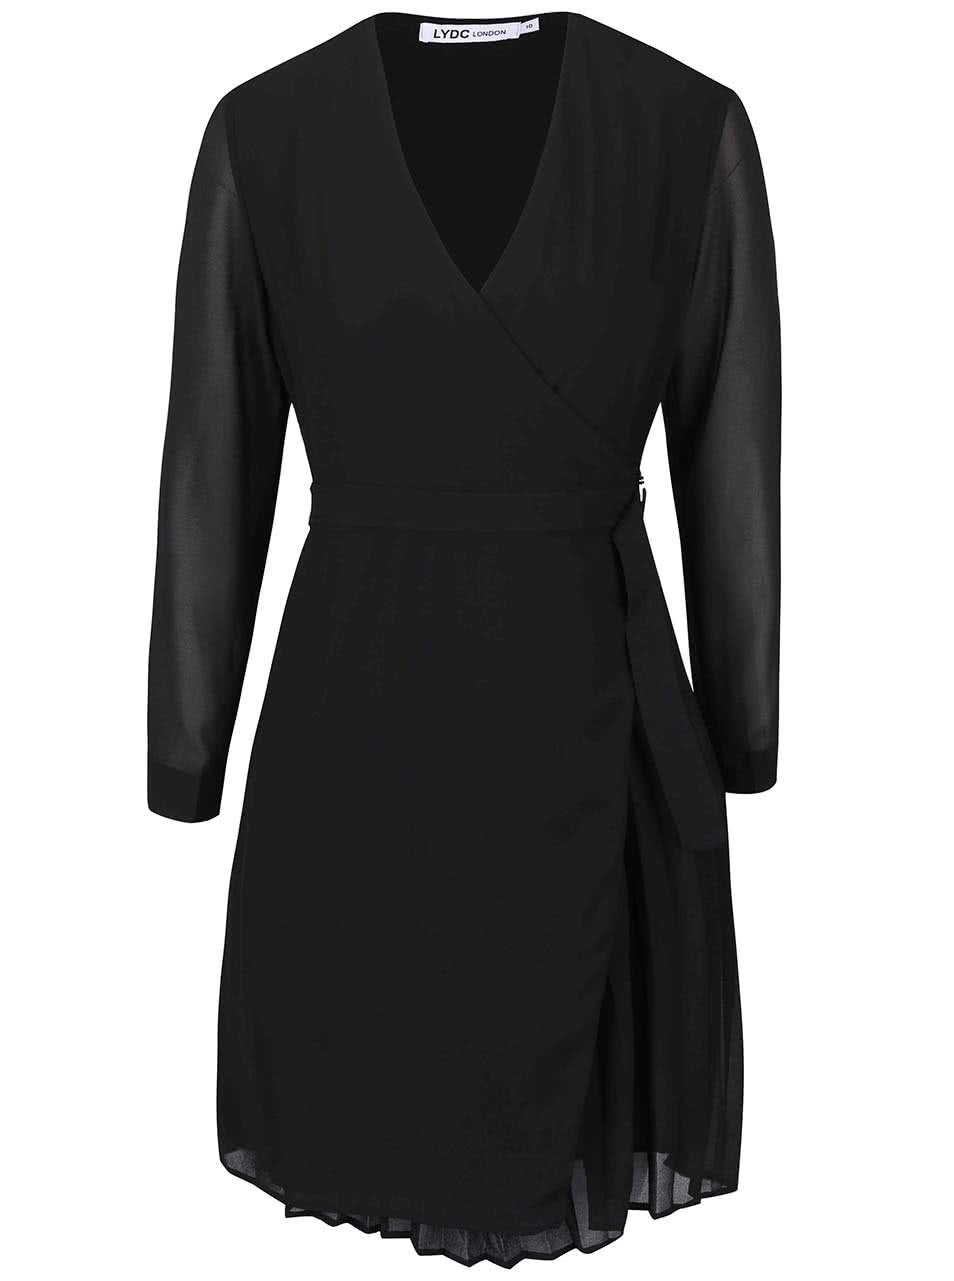 Černé zavinovací šaty s dlouhým rukávem LYDC